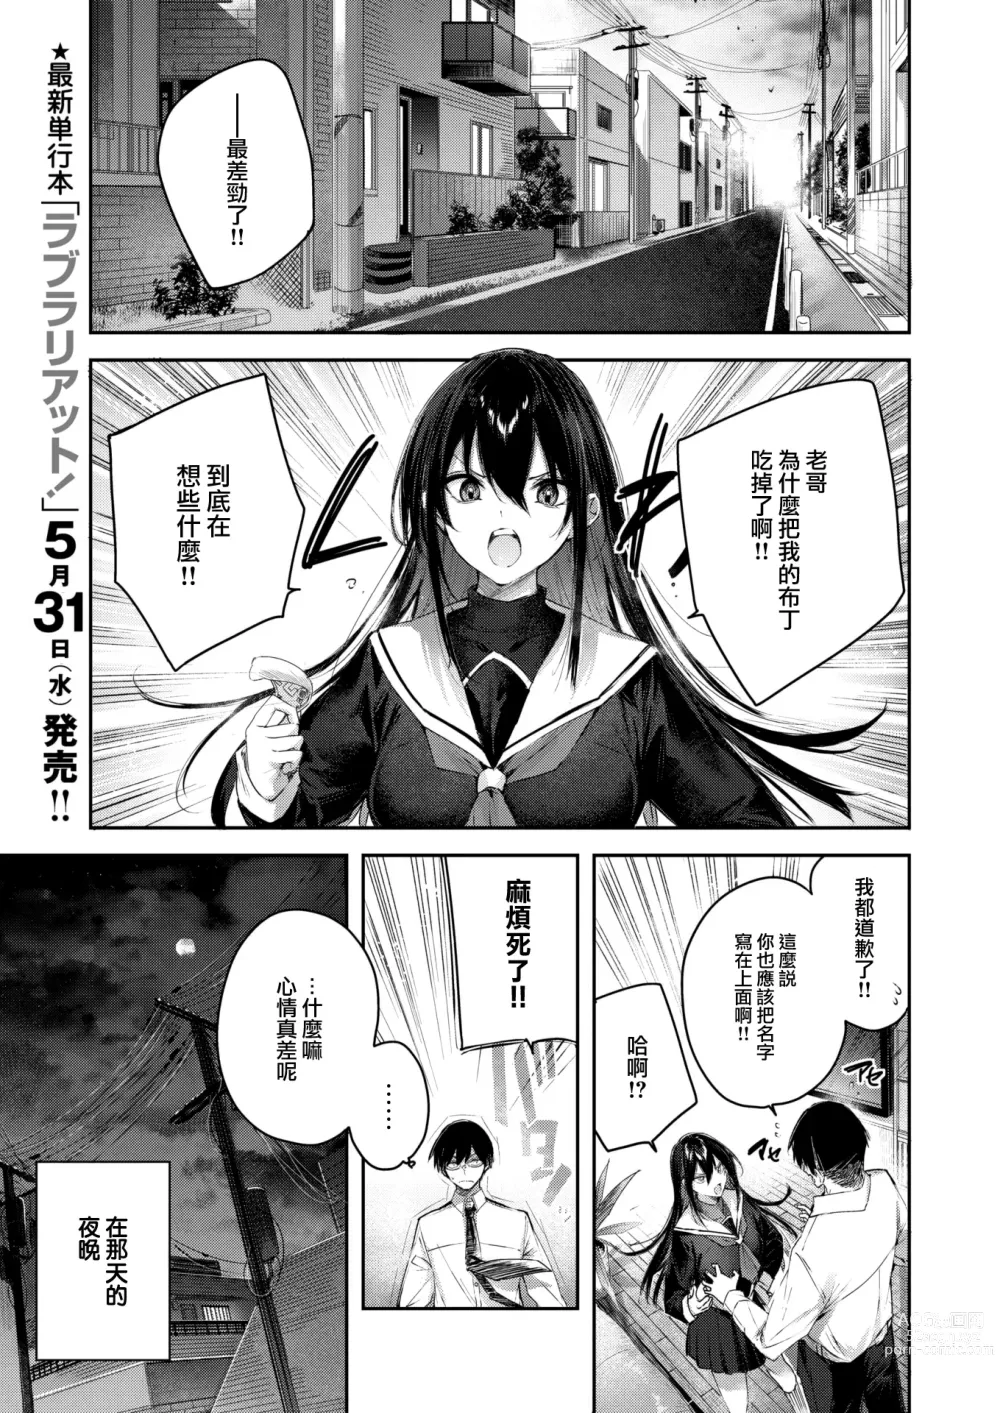 Page 4 of manga Imouto Pudding